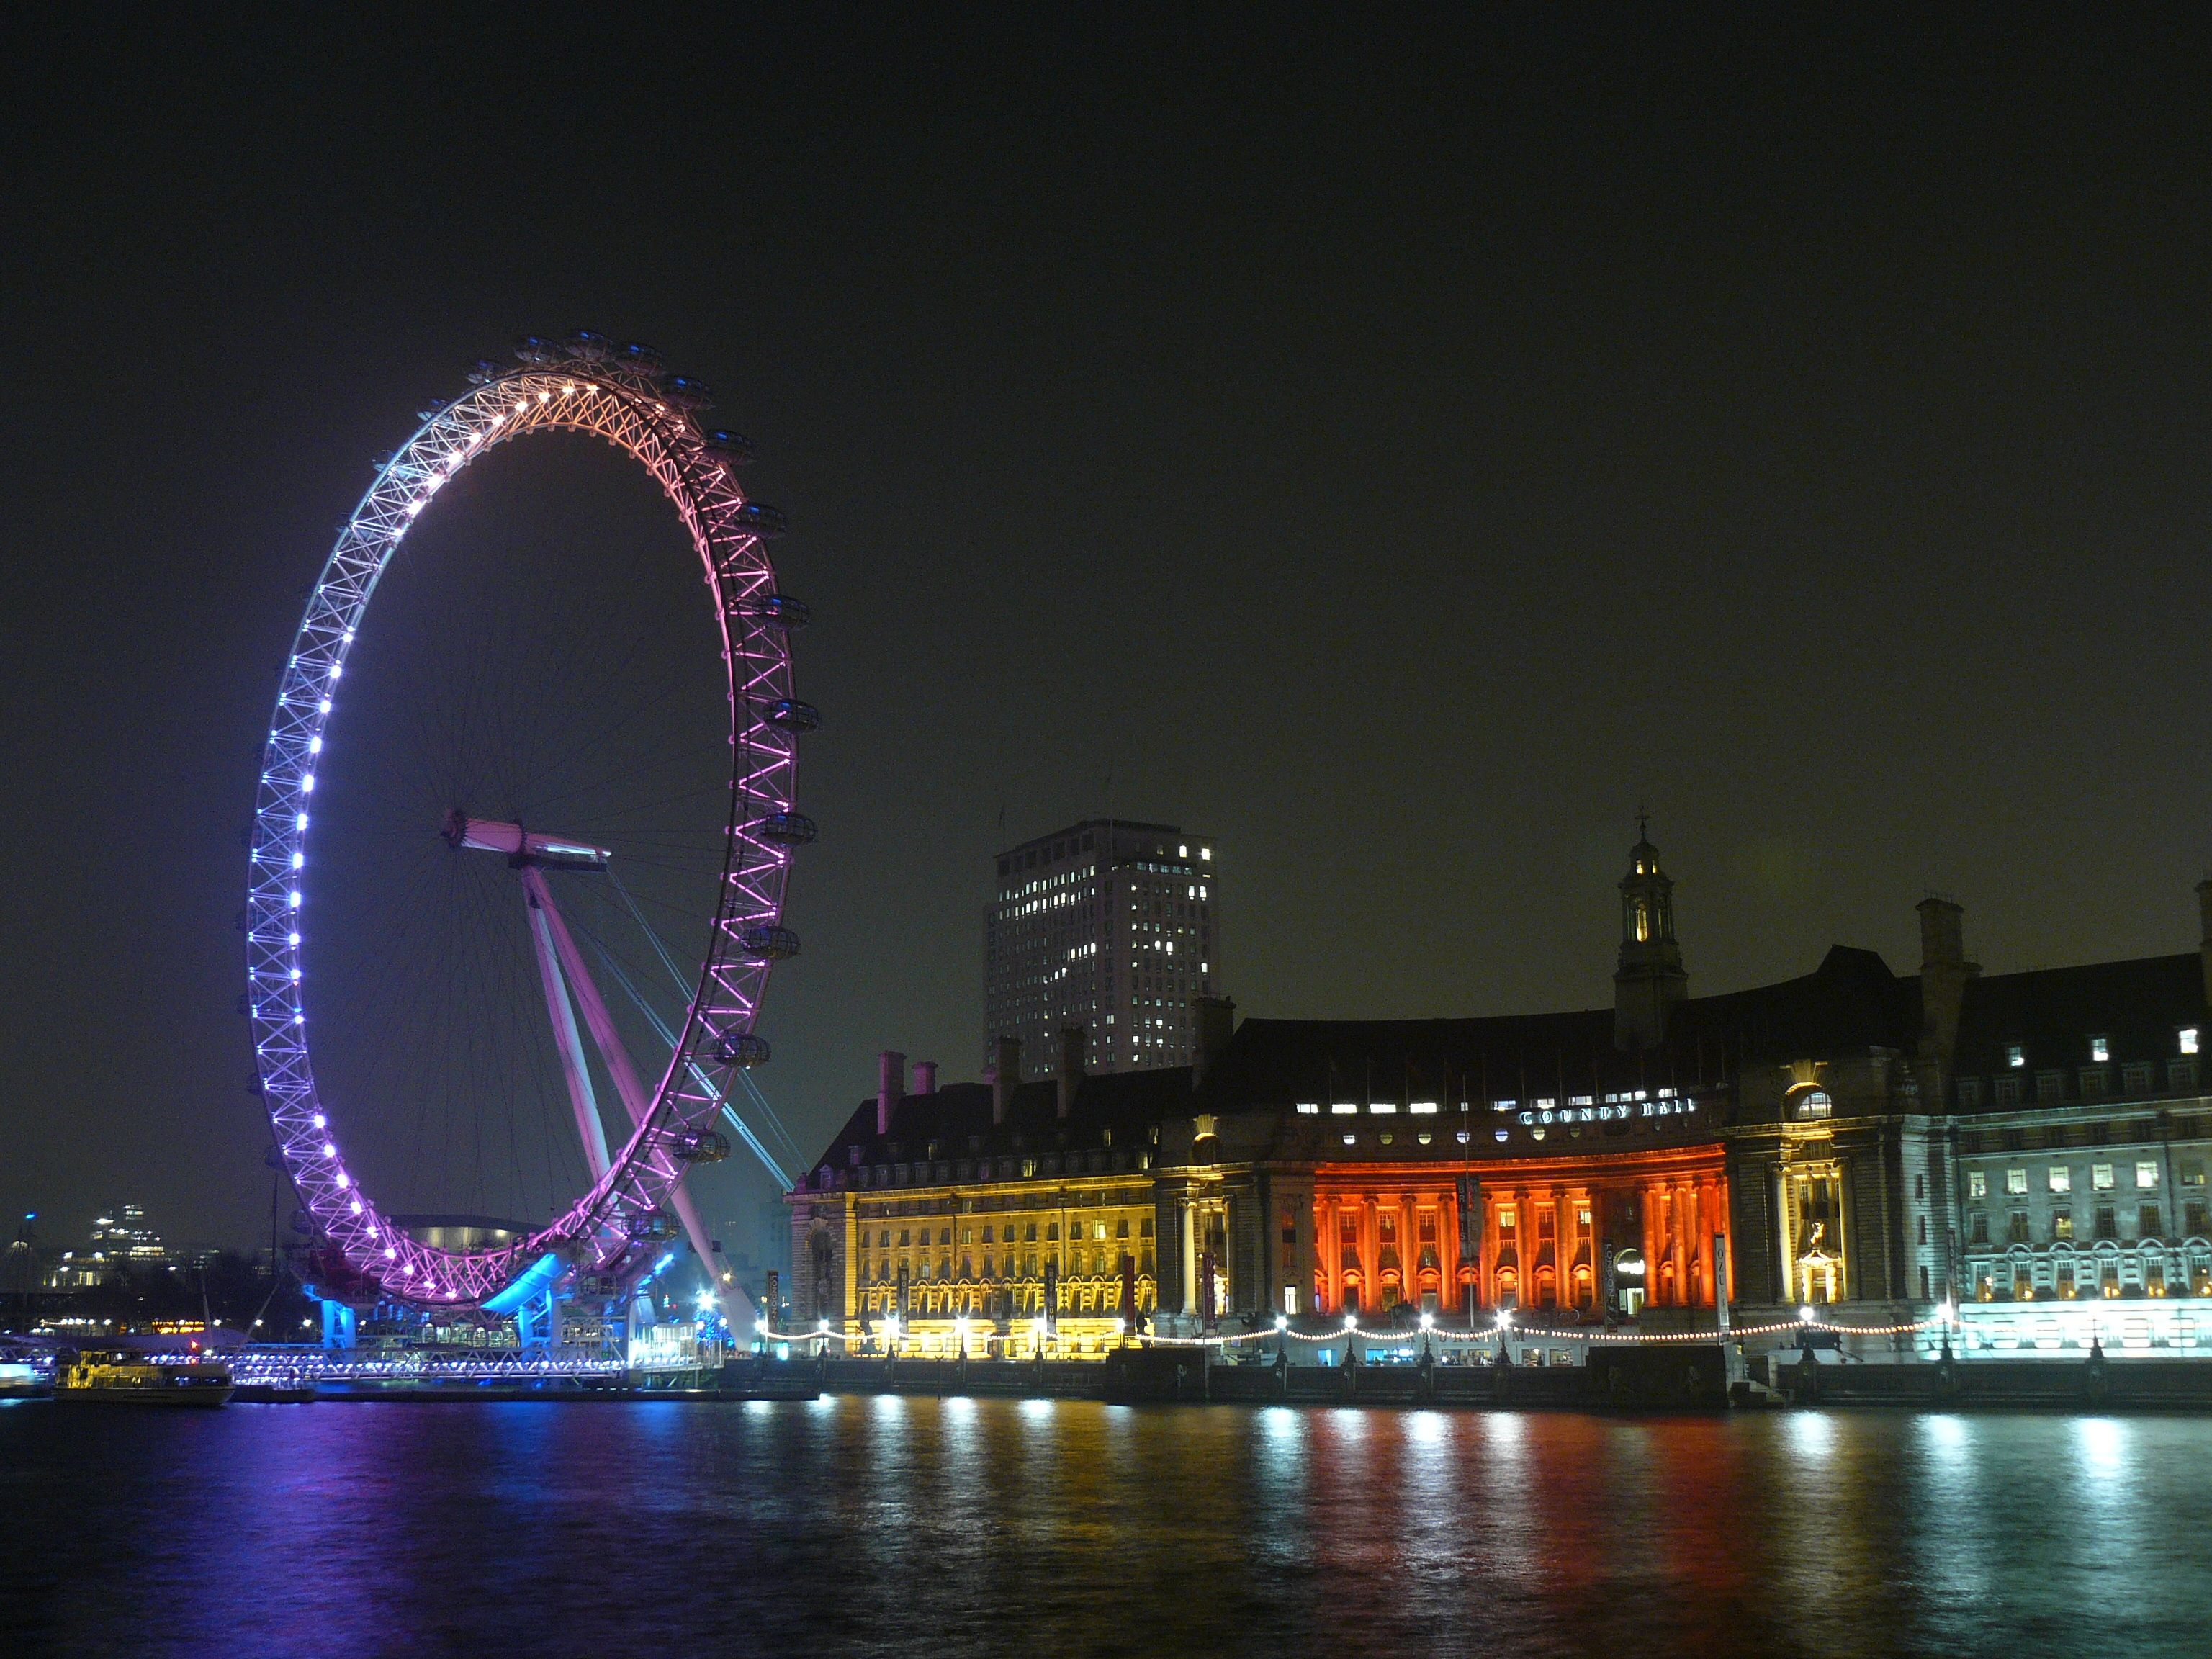 Sentiment Analysis: Die Lightshow von London